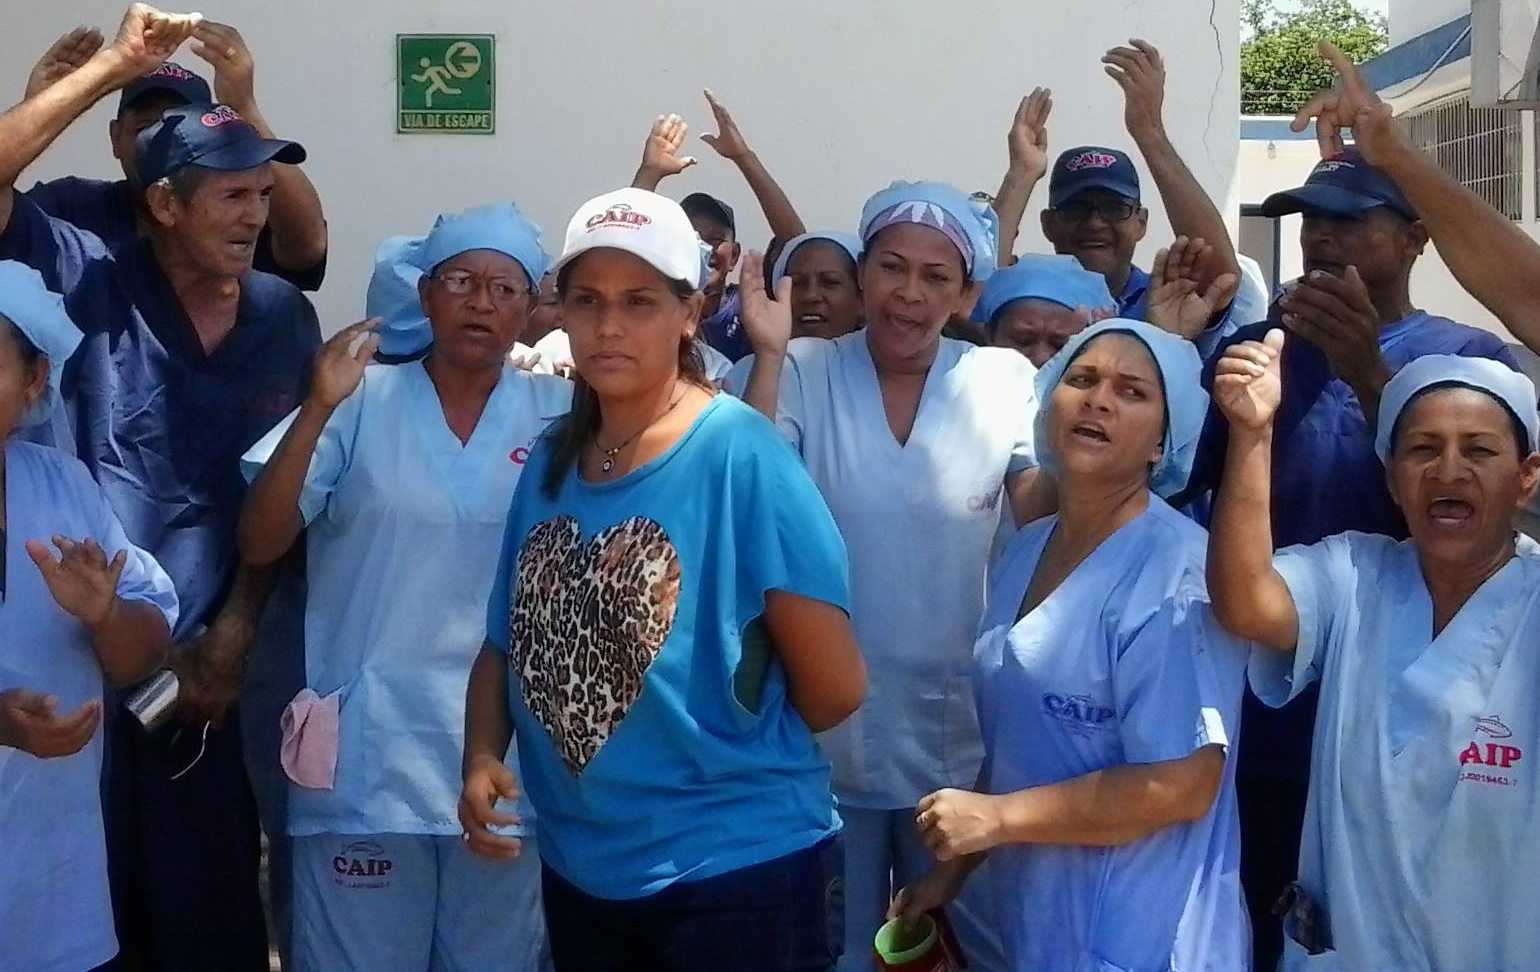 Trabajadores de enlatadoras de atún protestaron por recorte de comida  (video)